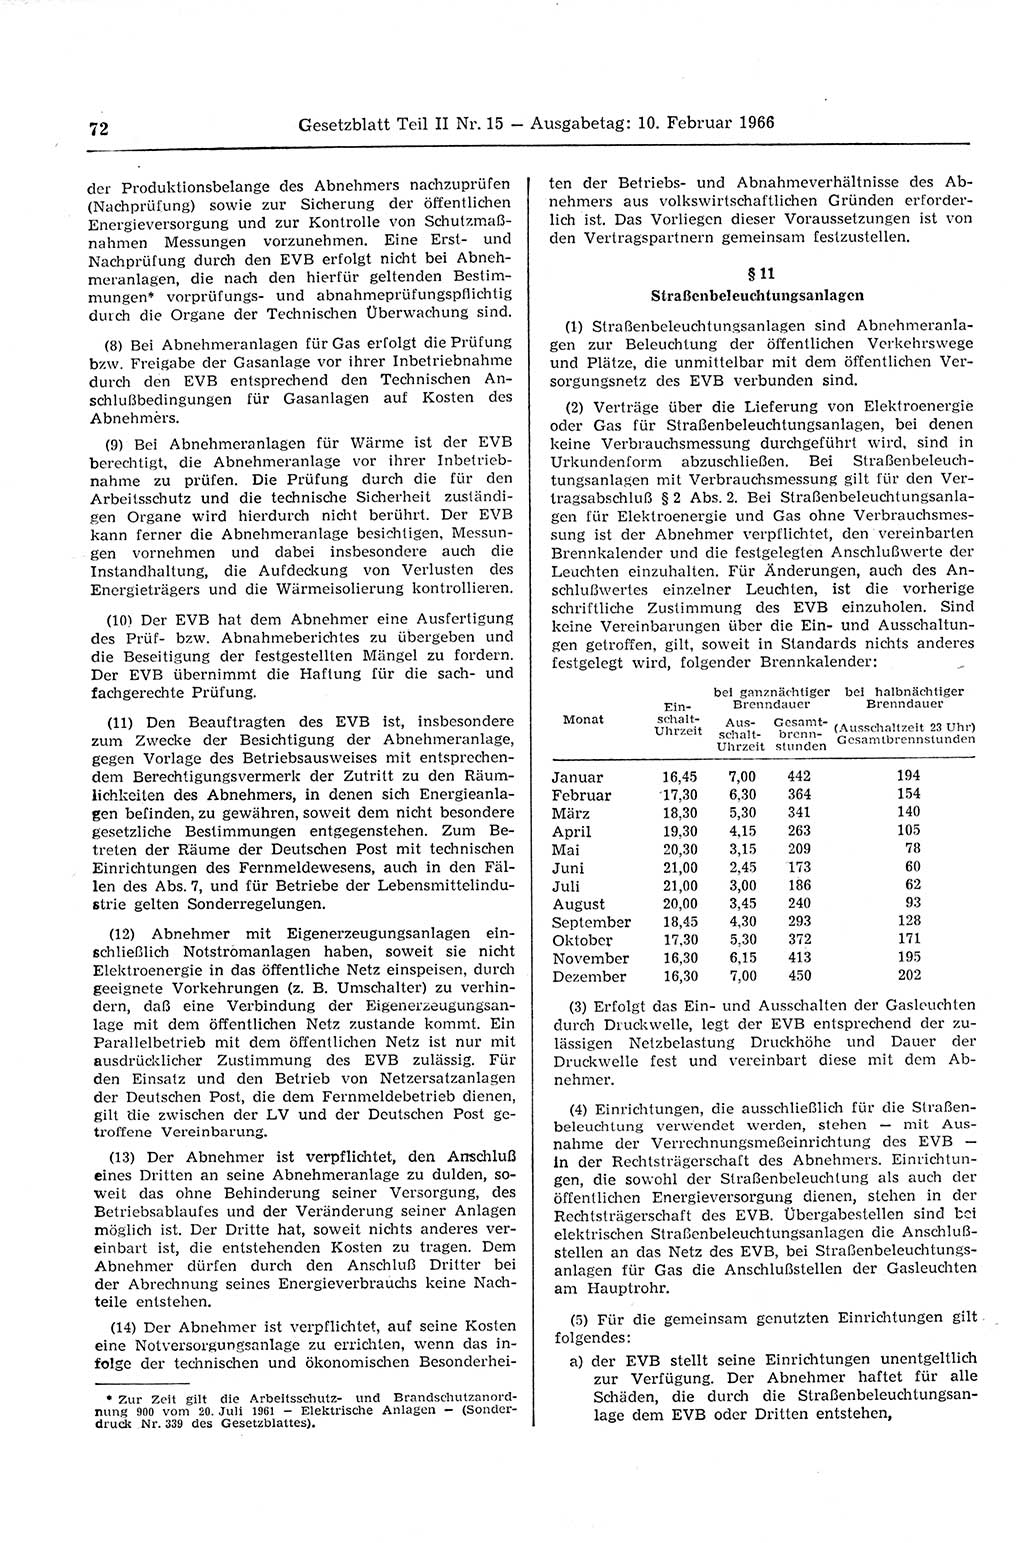 Gesetzblatt (GBl.) der Deutschen Demokratischen Republik (DDR) Teil ⅠⅠ 1966, Seite 72 (GBl. DDR ⅠⅠ 1966, S. 72)